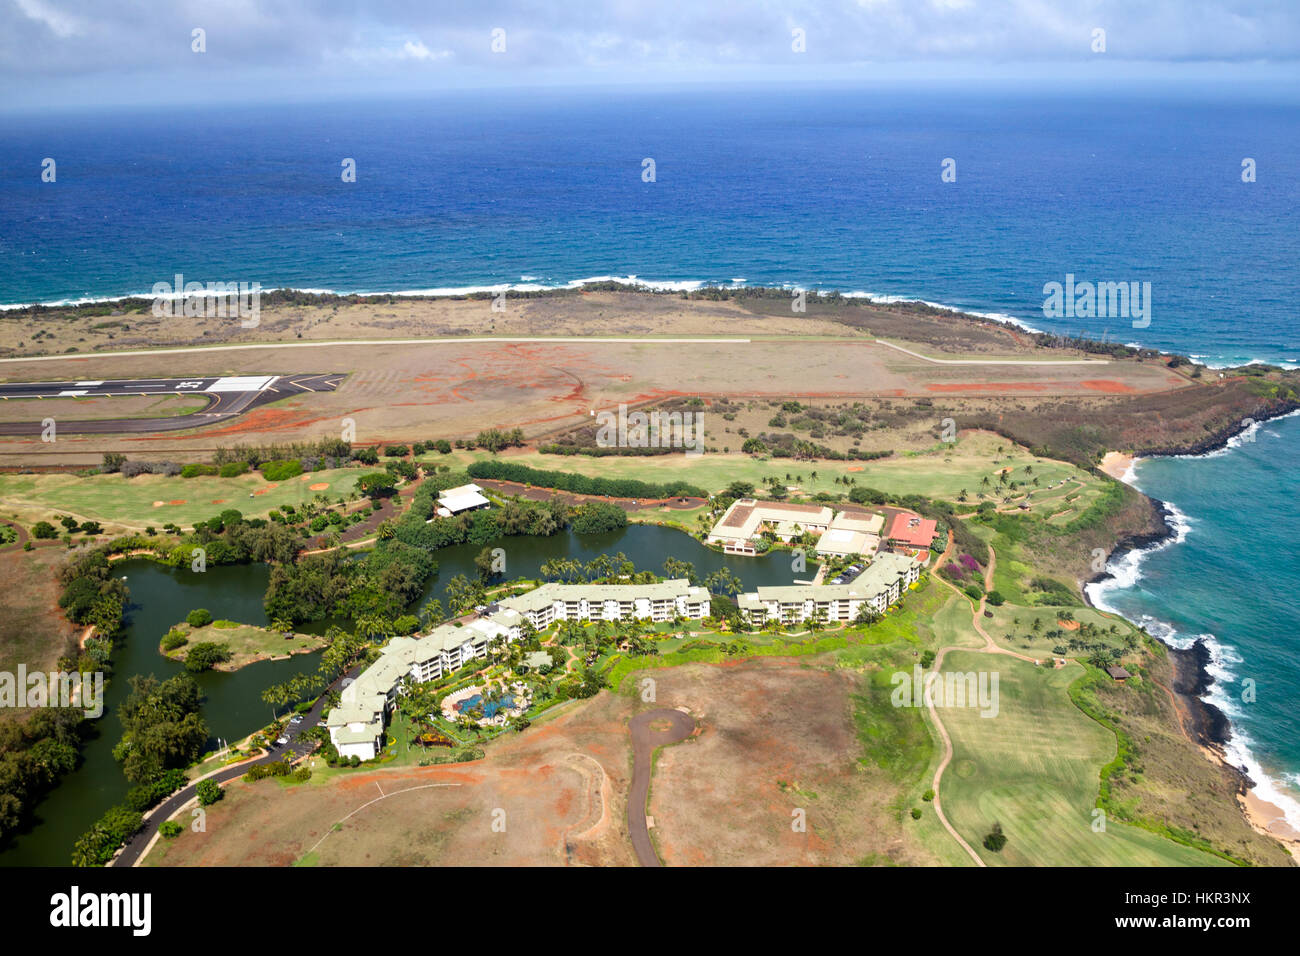 Aerial view of the Kauai Marriot Resort near the airport of Lihue, Kauai, Hawaii, USA. Stock Photo